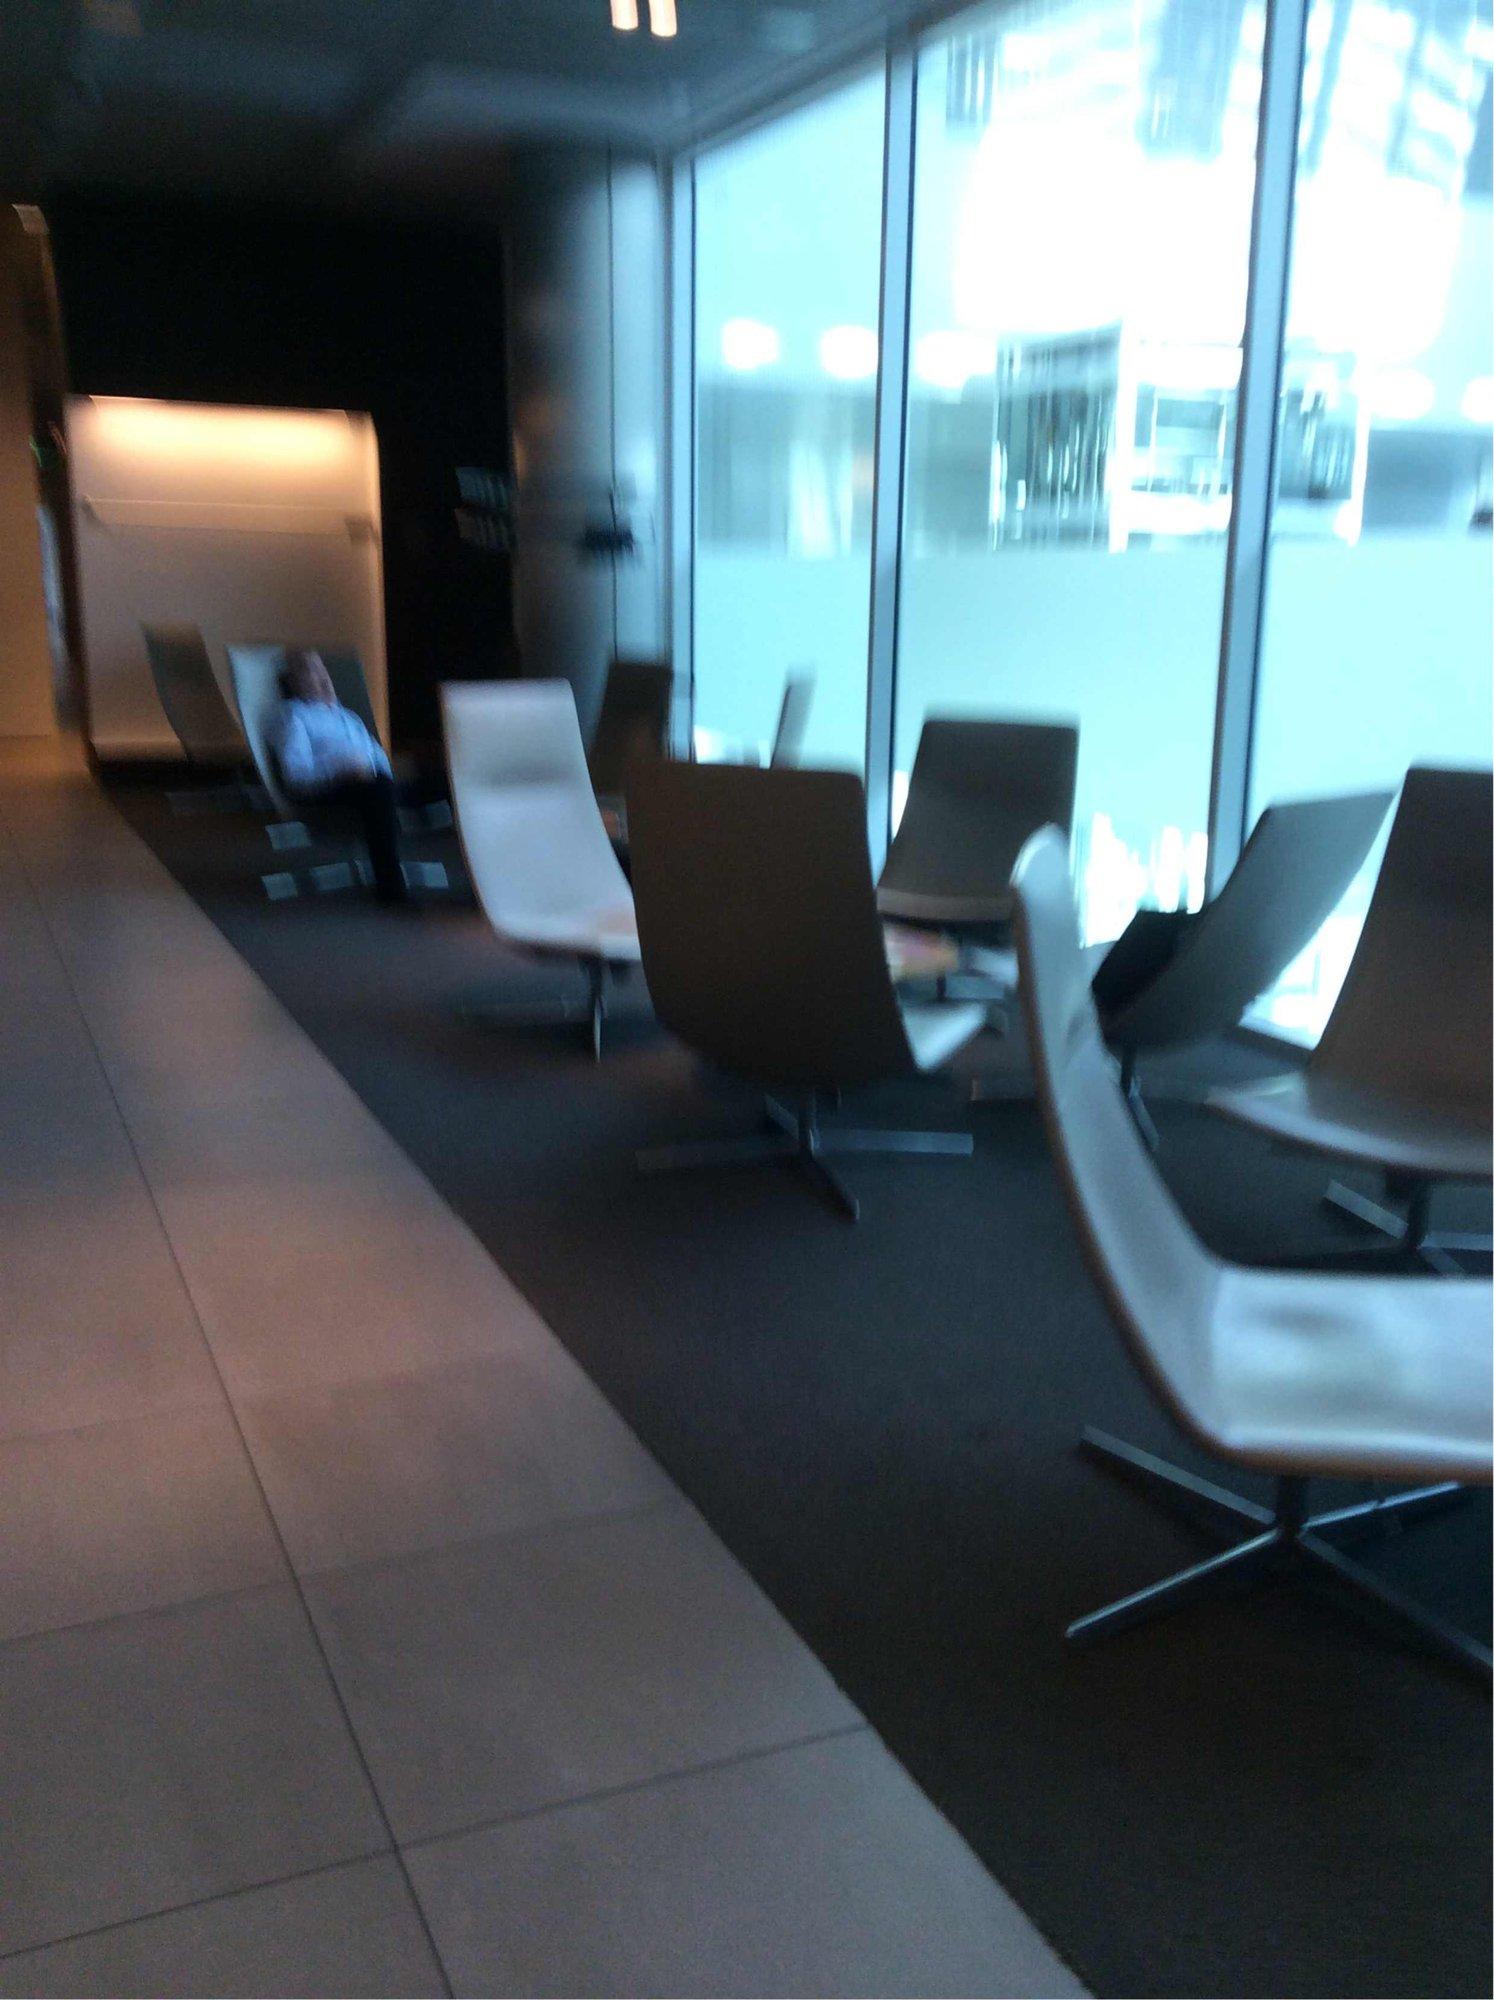 Lufthansa Senator Lounge (Non-Schengen) image 14 of 14